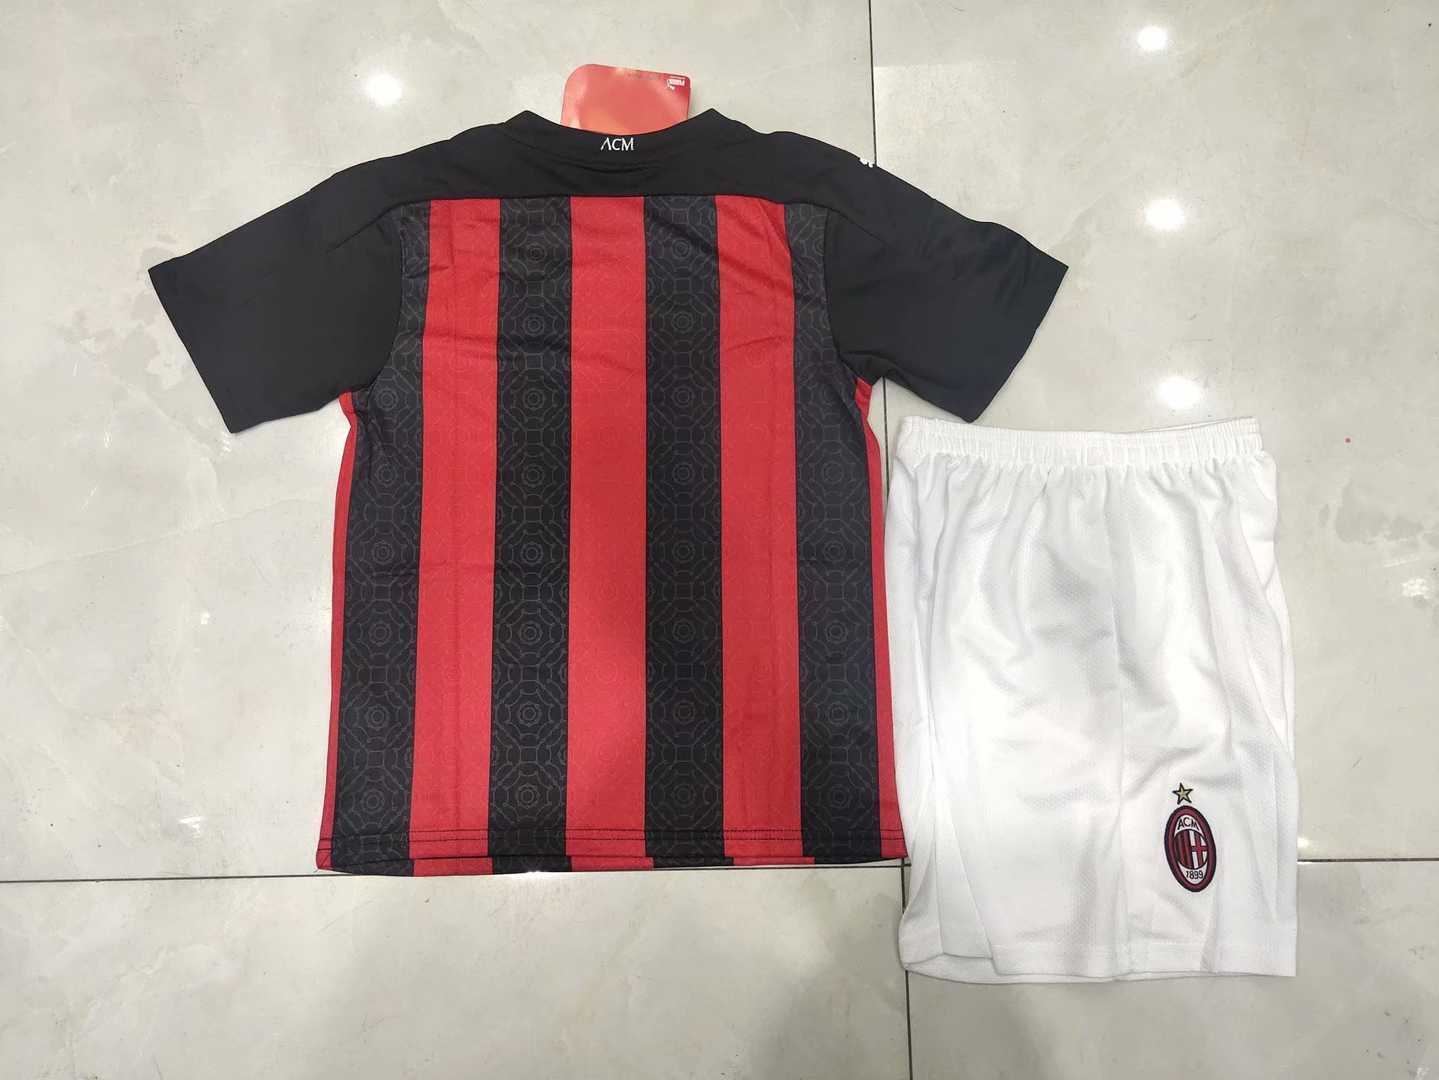 2020/21 AC Milan Home Kids Soccer Kit (Jersey + Shorts)